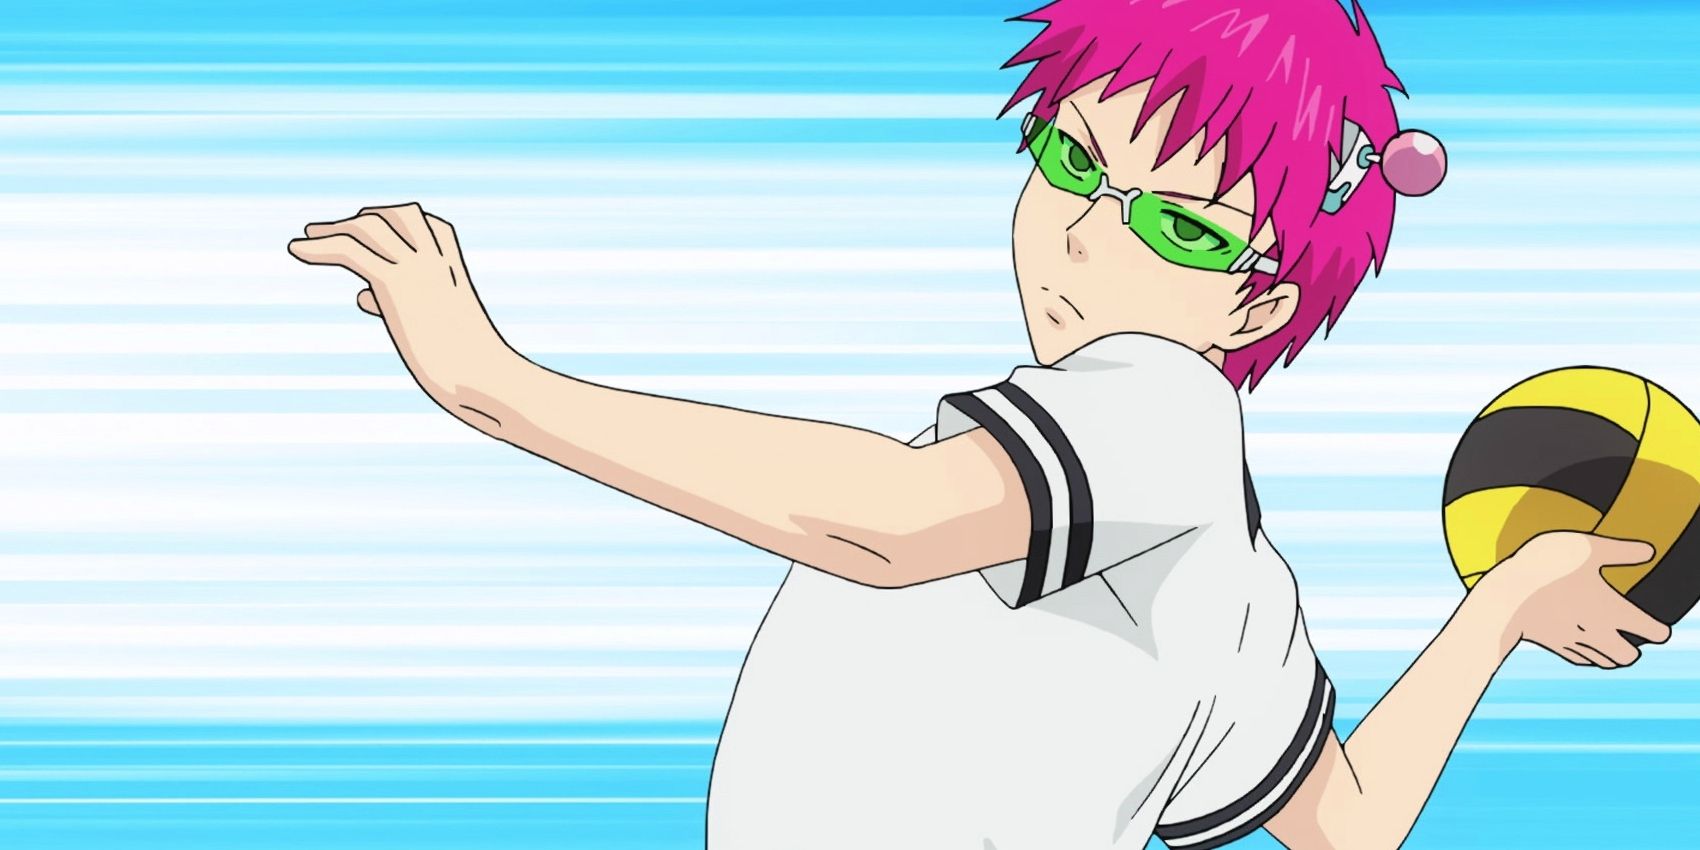 Kusuo prepares to throw a dodgeball in Saiki K Season 1 Episode 2